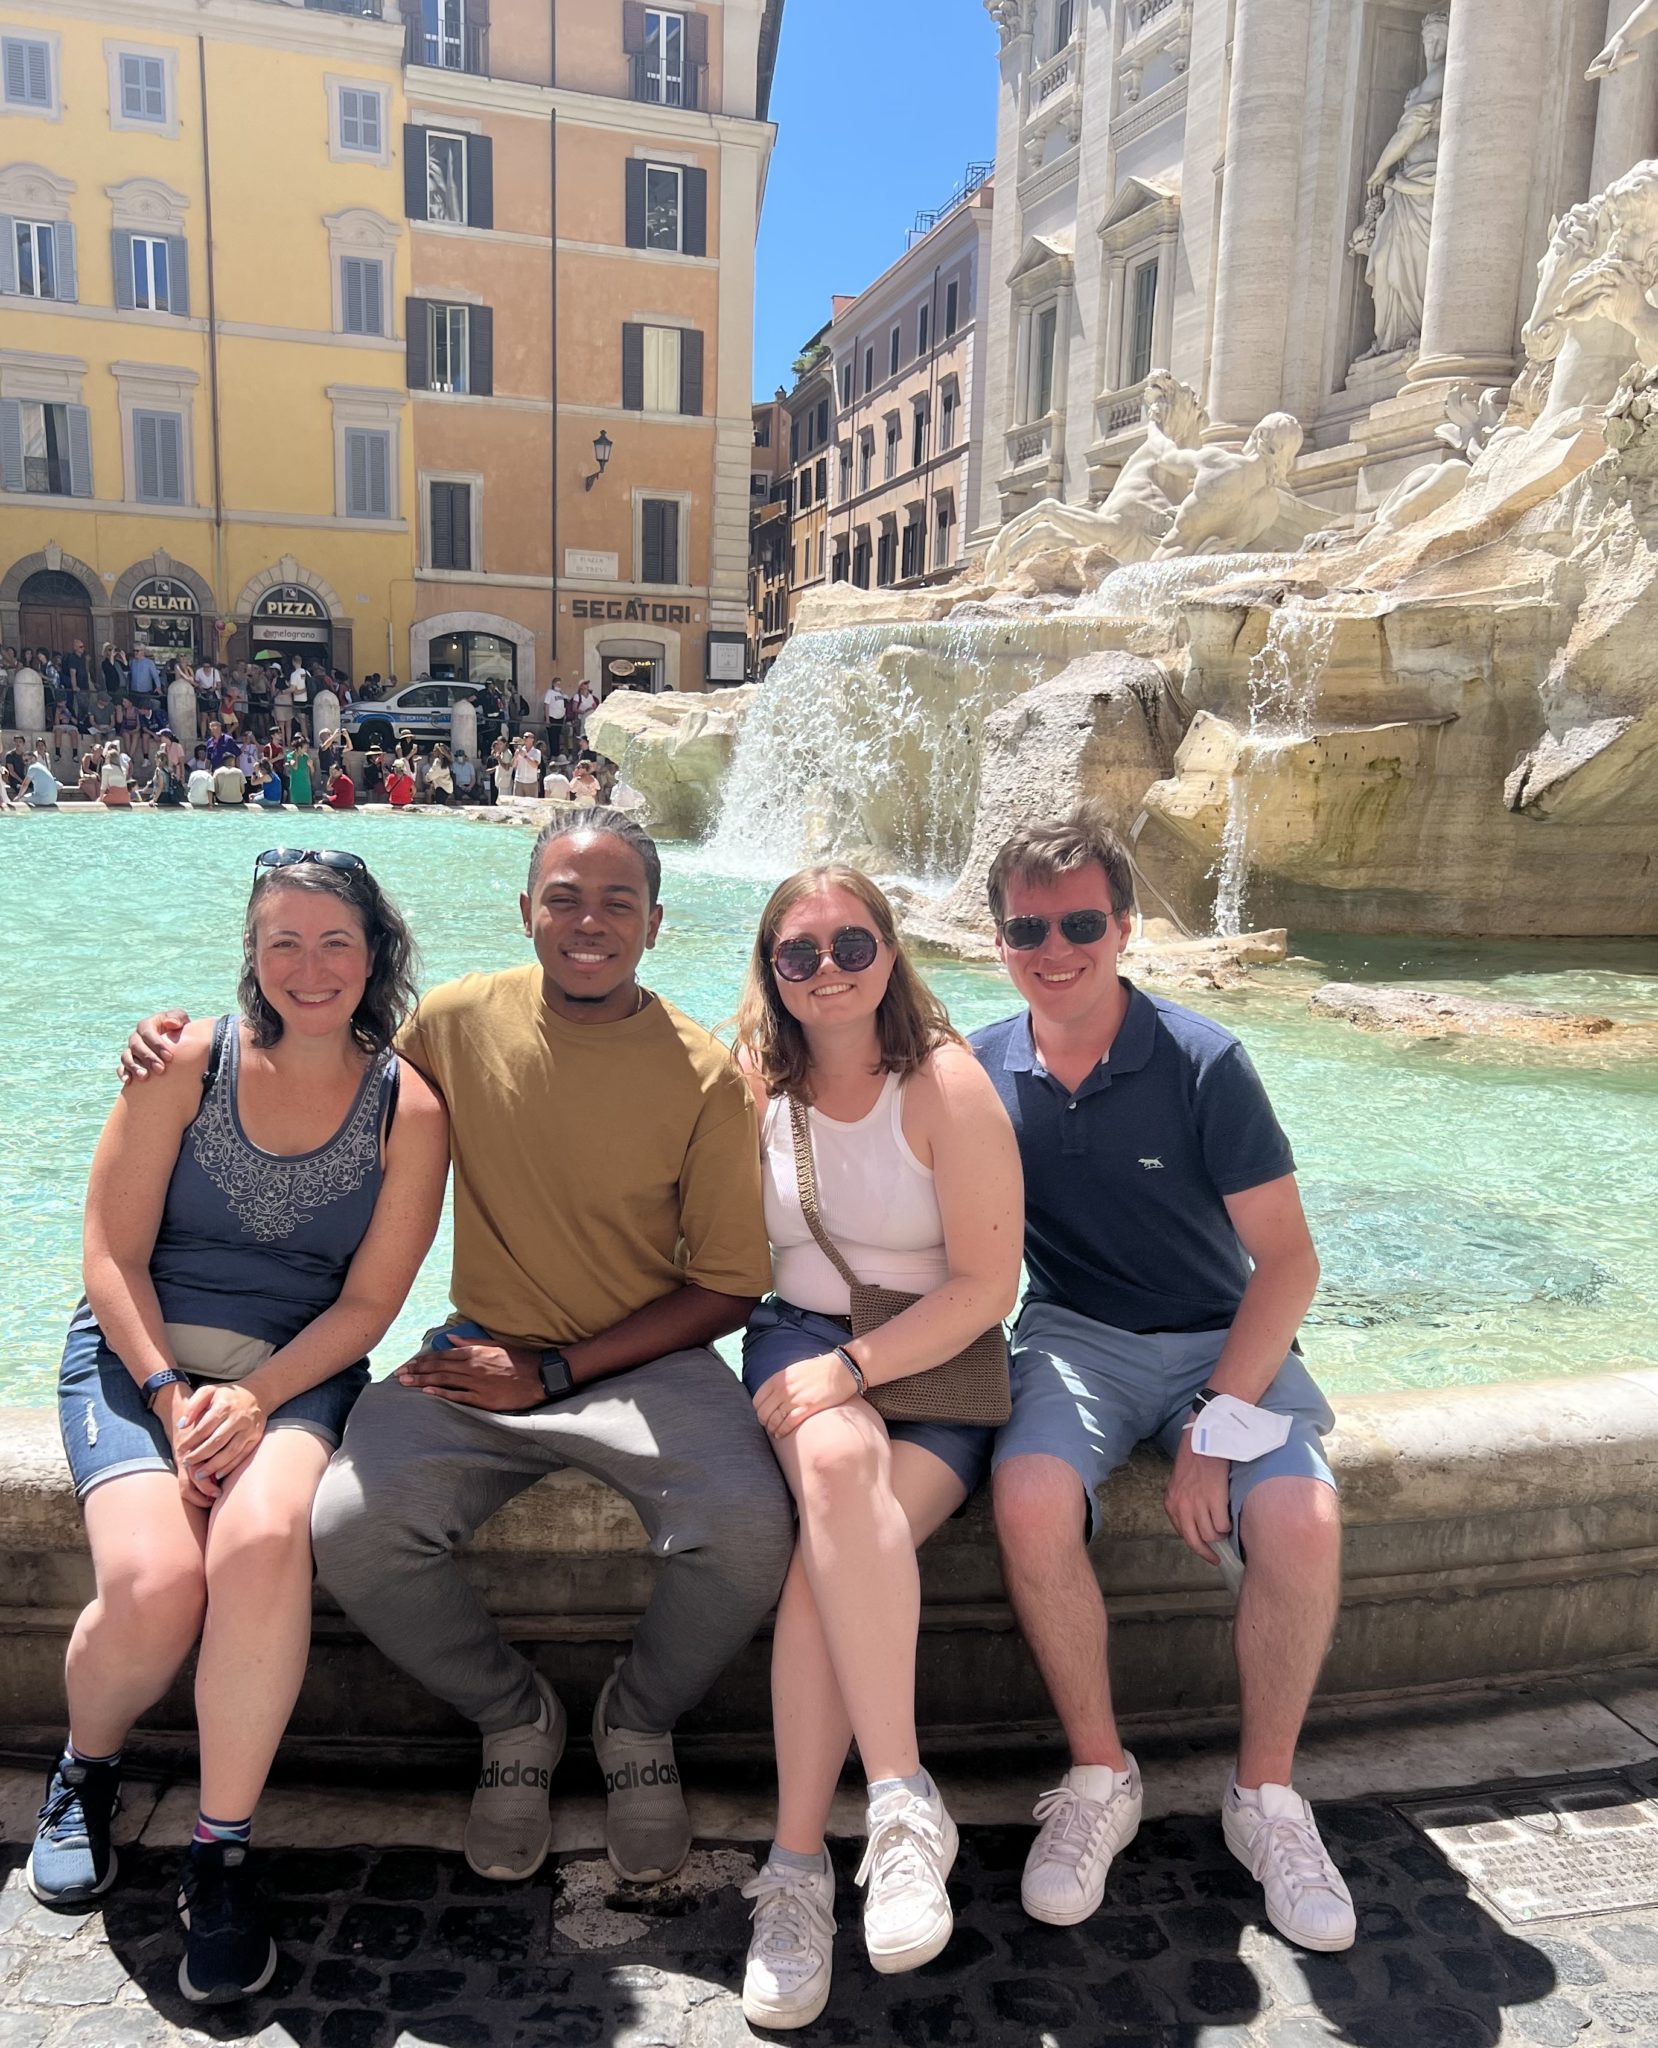 Shaina Holmes, David Barbier Jr., Rowan Ide and Thomas Finnegan at the Trevi Fountain in Rome, Italy.